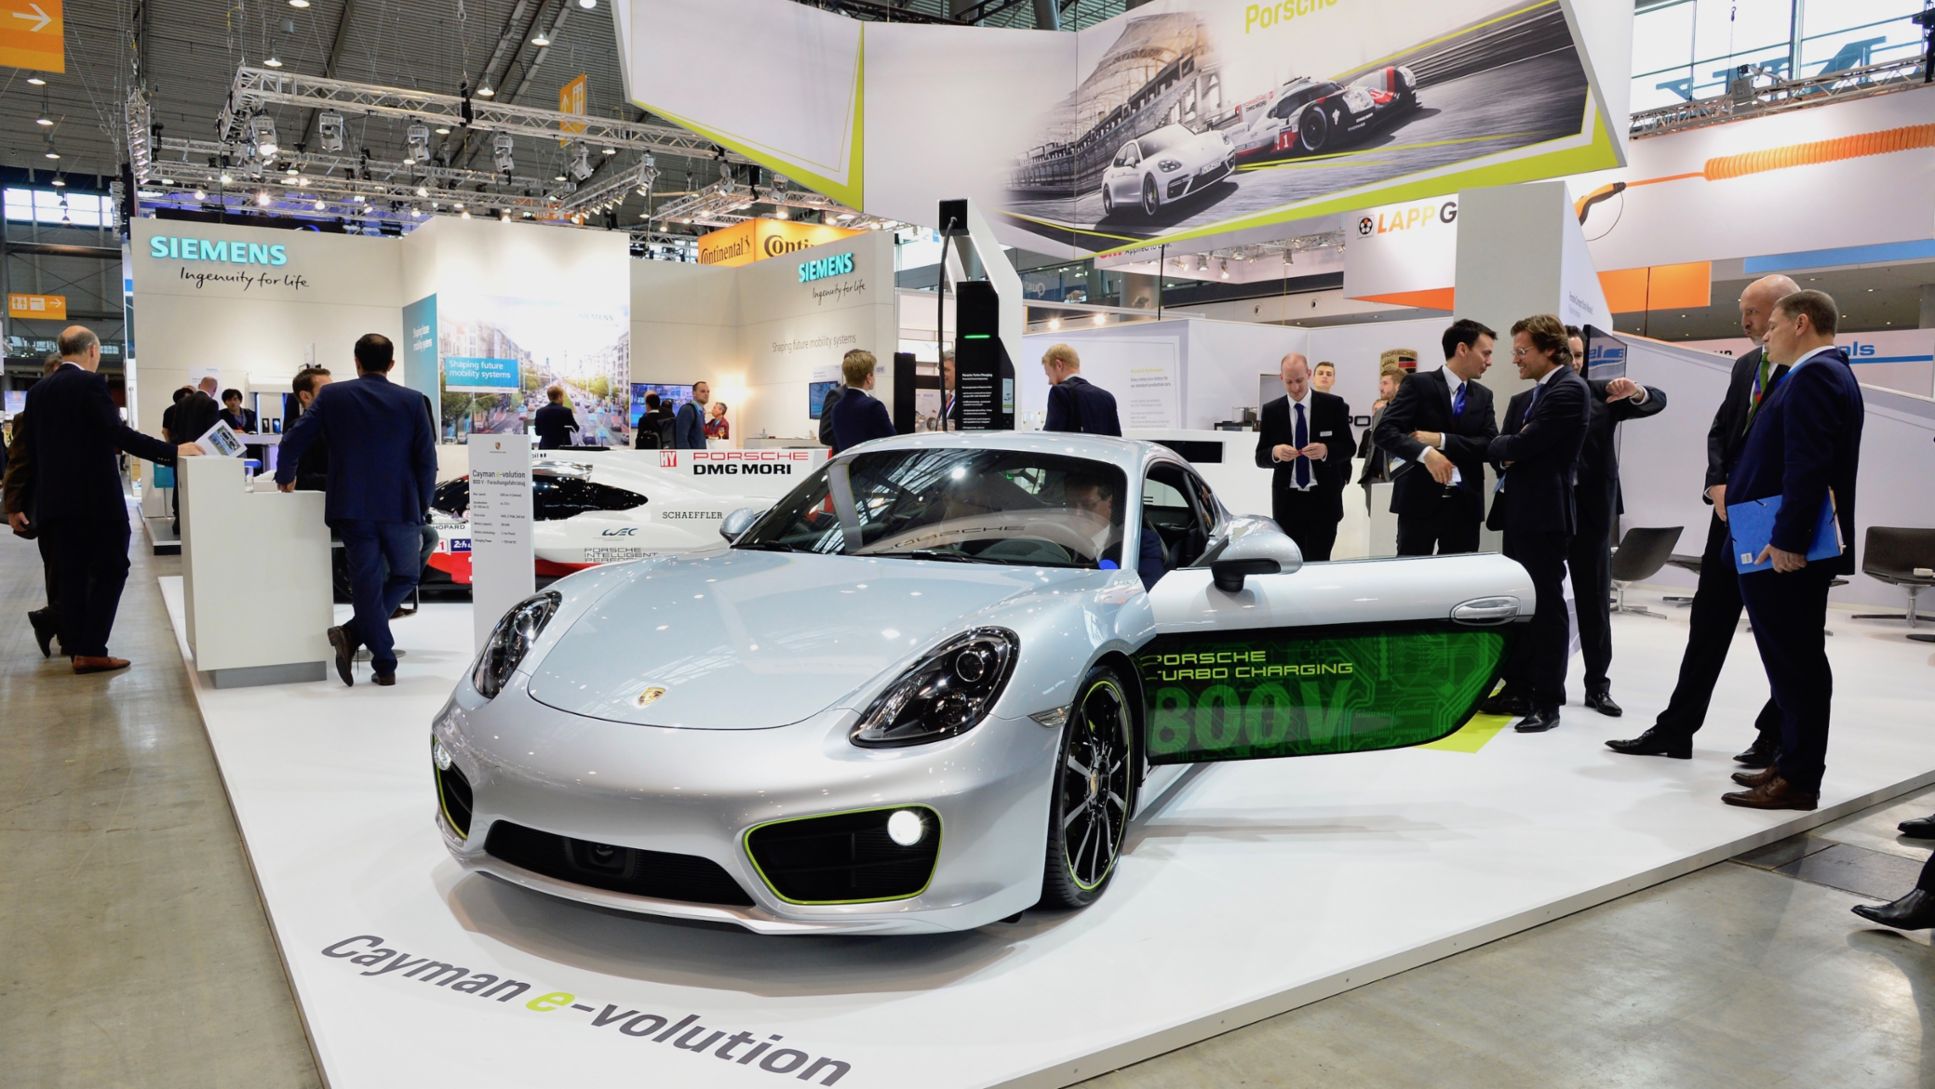 Cayman e-volution, Electric Vehicle Symposium, Stuttgart, 2017, Porsche AG